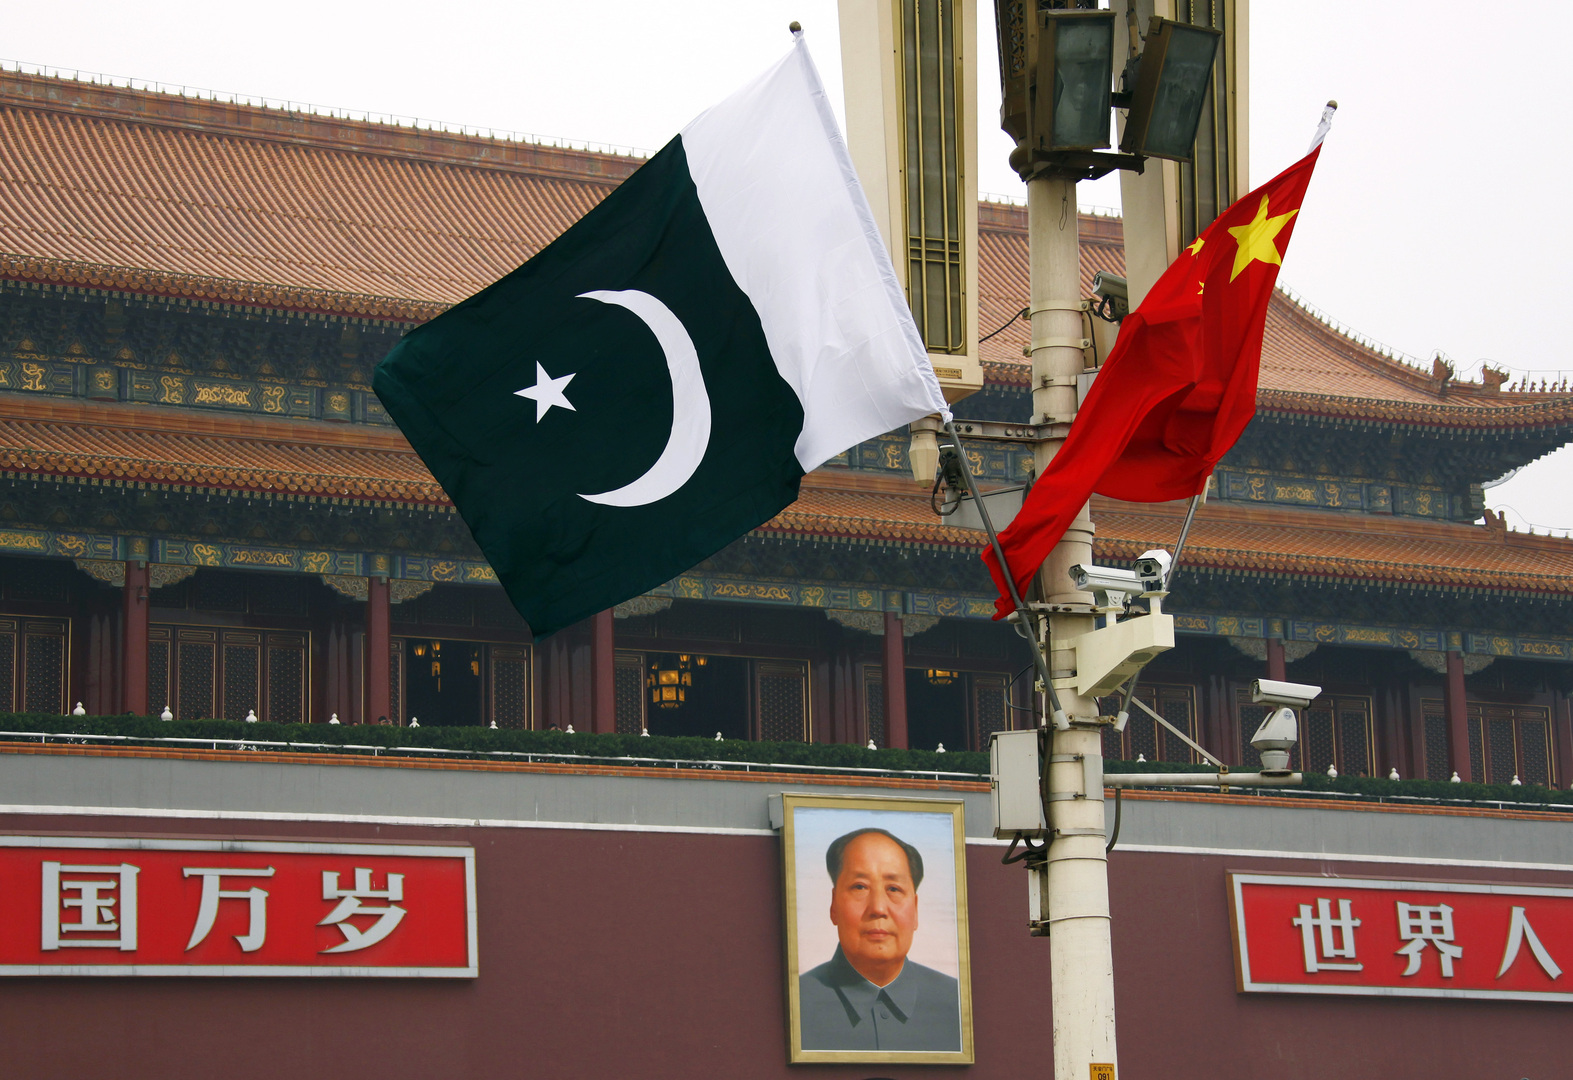 الرئيس الباكستاني يشدد على الفائدة التي سيعود بها الممر الاقتصادي بين الصين وبلاده